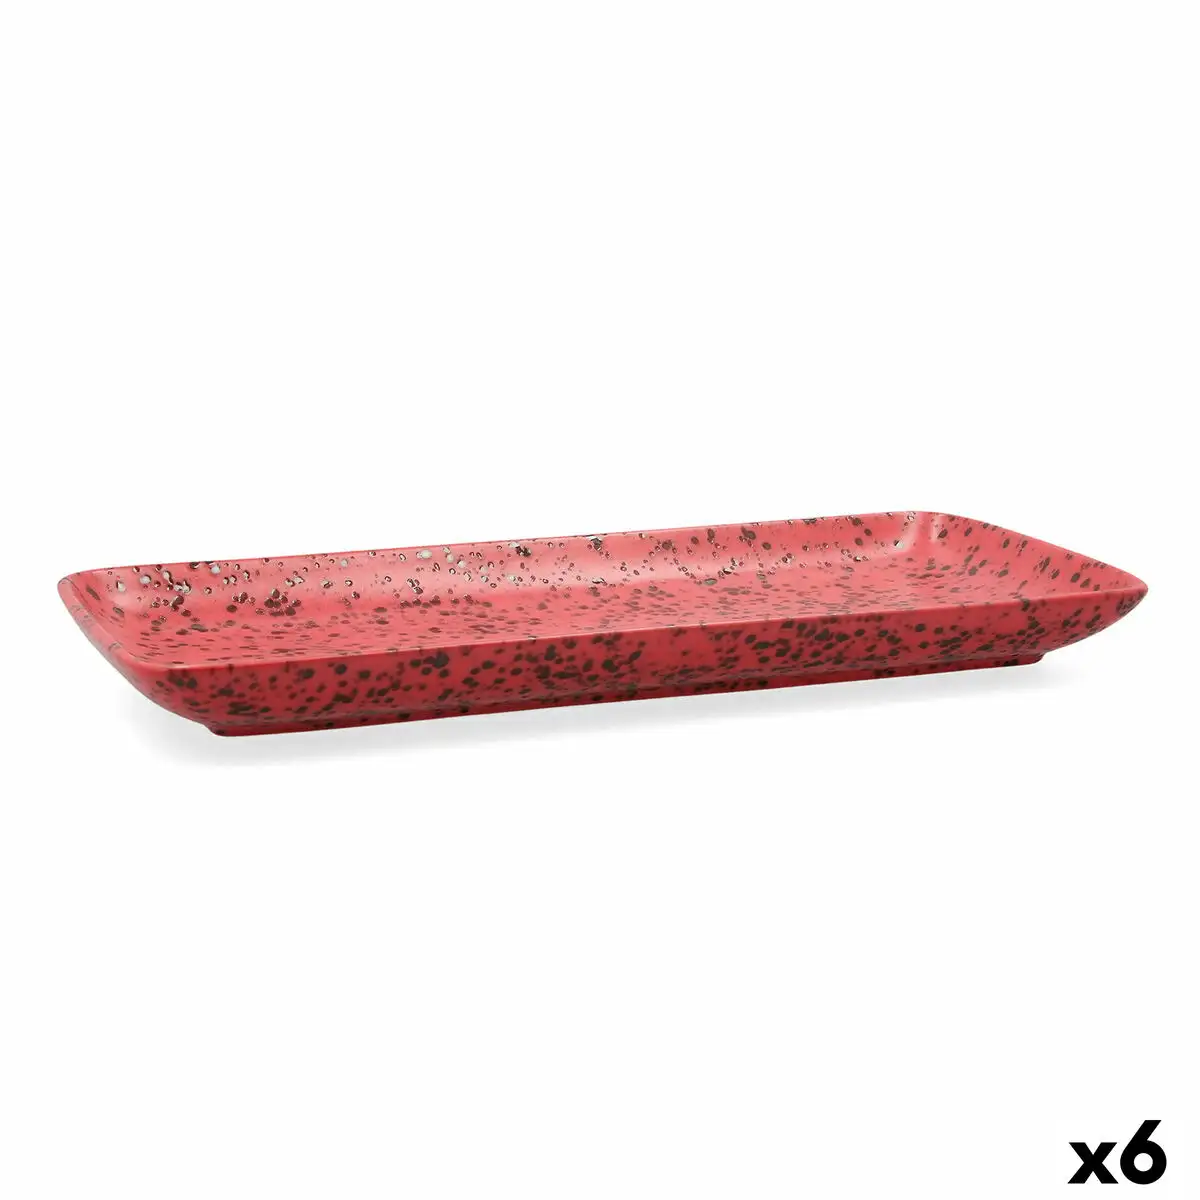 Plateau de service ariane oxide ce ramique rouge 36 x 16 5 cm 6 unite s_3835. DIAYTAR SENEGAL - L'Art de Choisir, l'Art de Vivre. Parcourez notre boutique en ligne et découvrez des produits qui transforment chaque choix en une expérience enrichissante.